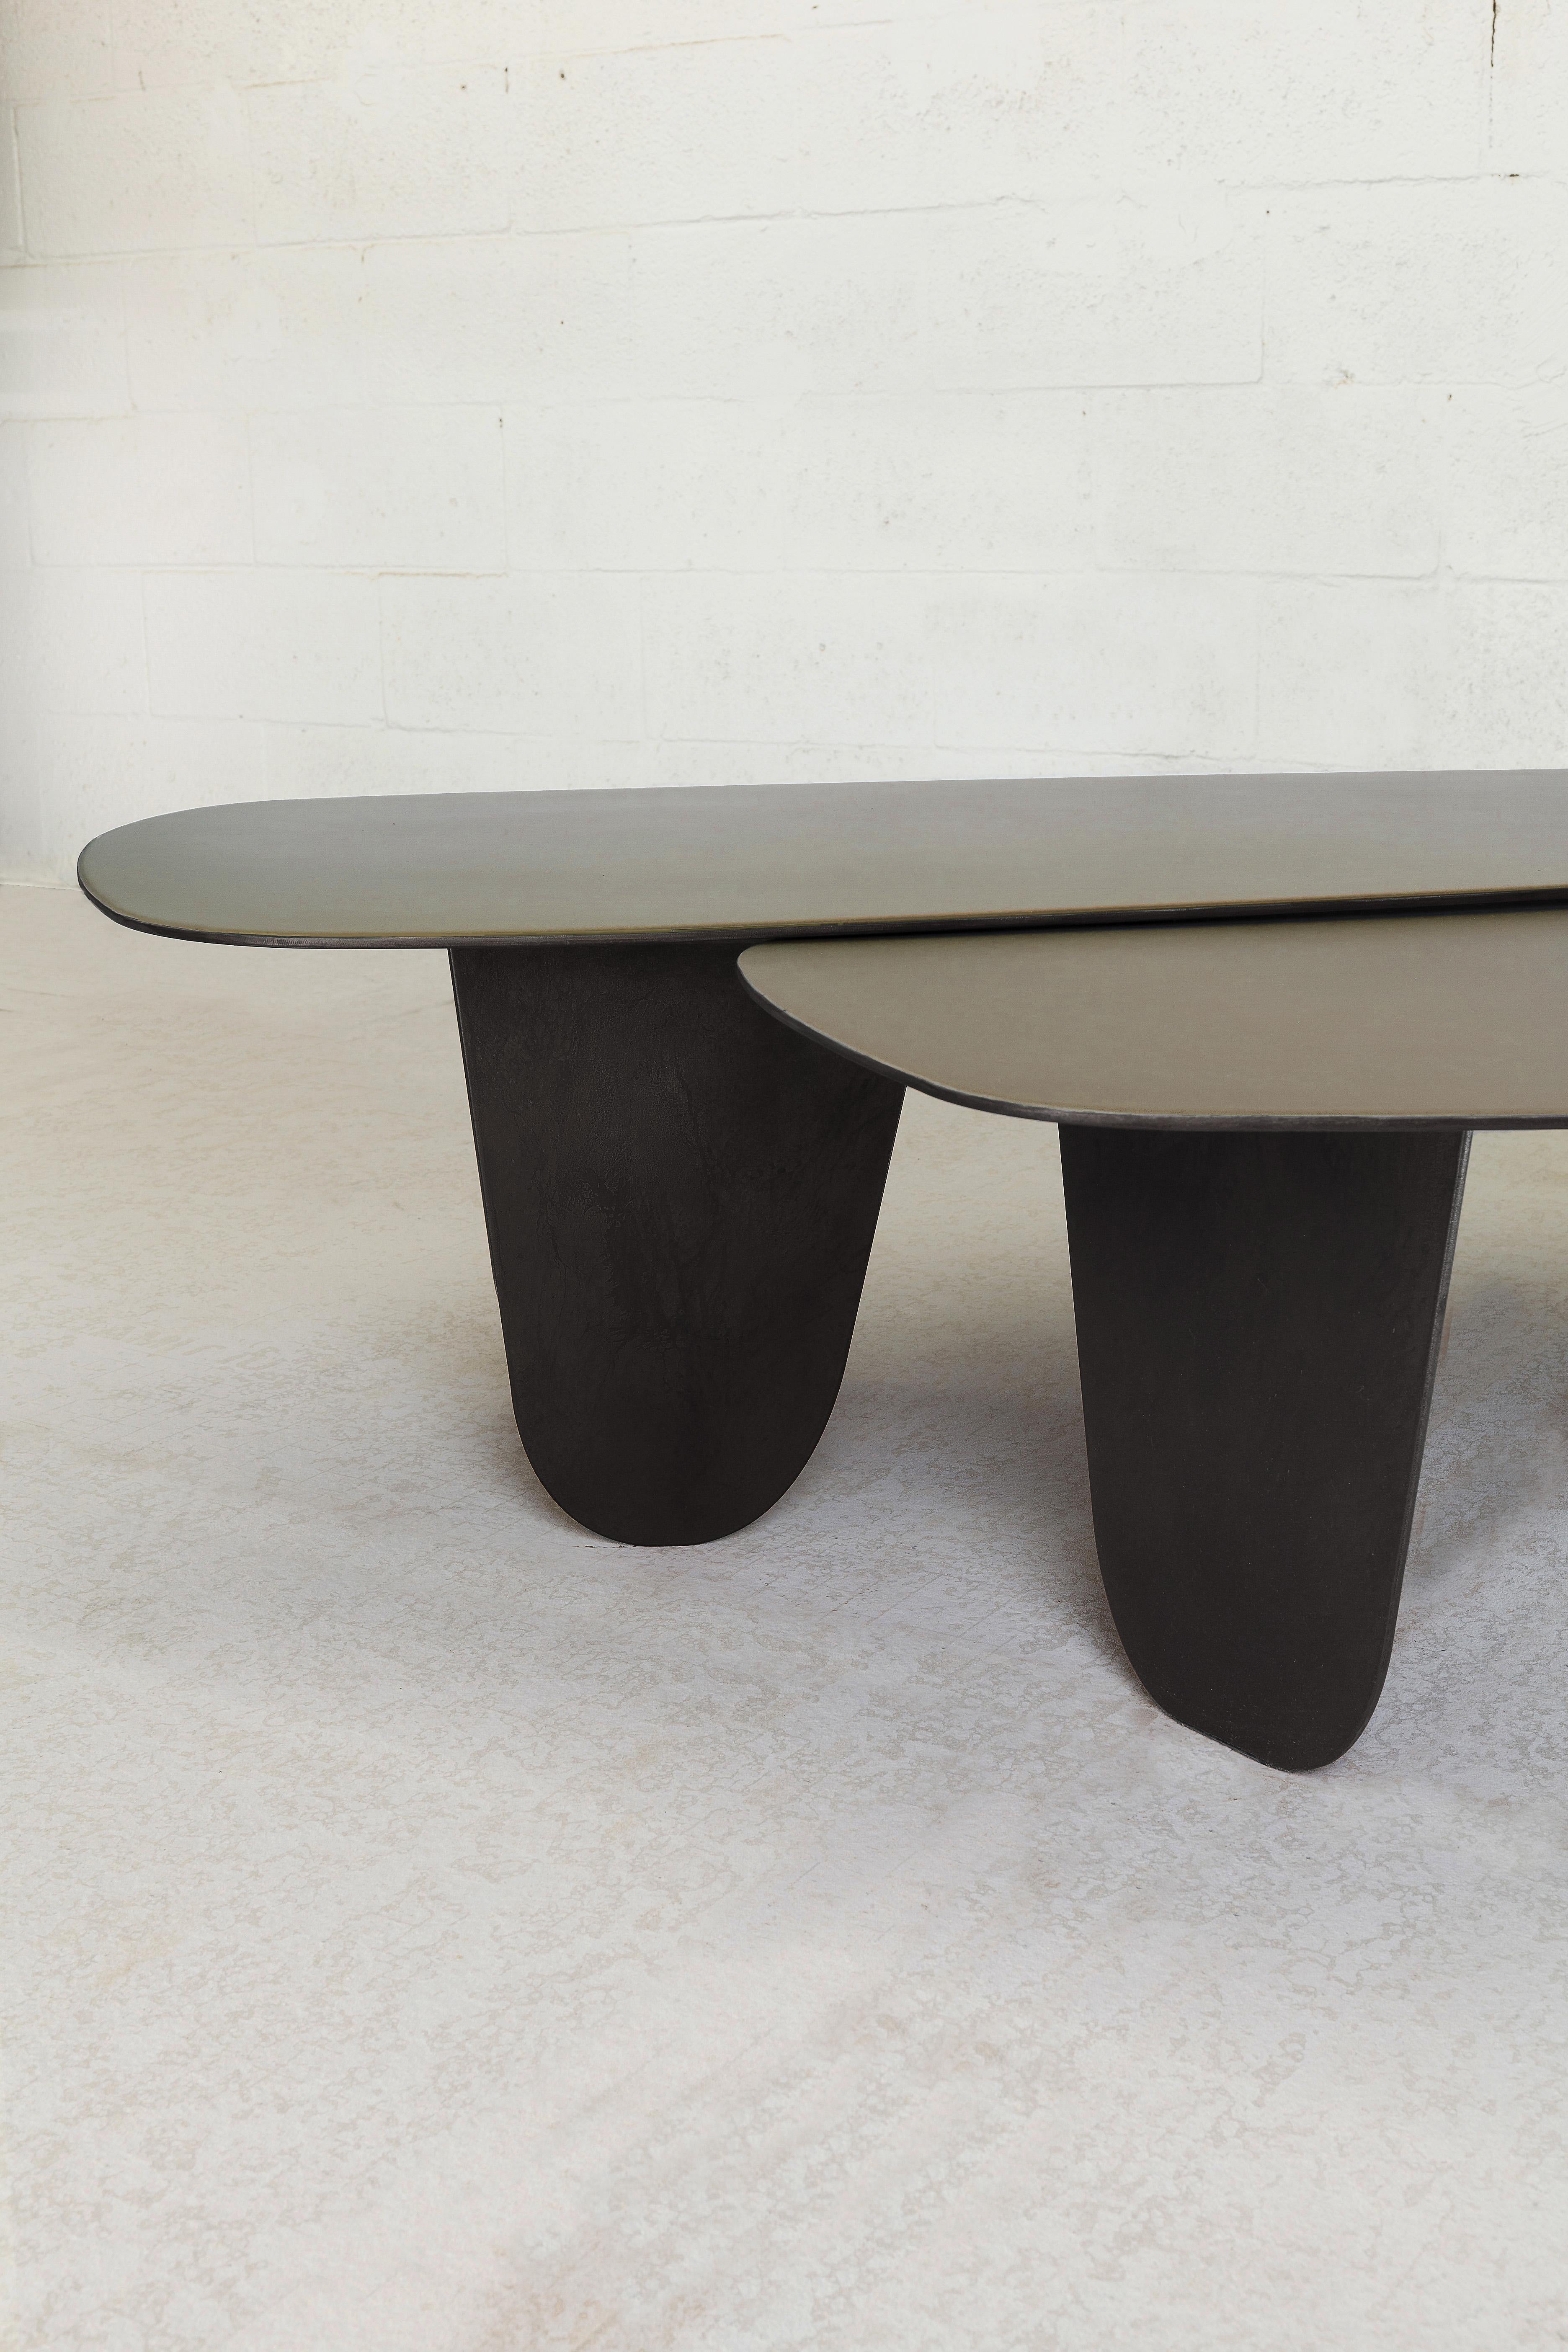 Die Osaka-Tische lassen sich von der japanischen Philosophie des organischen Minimalismus inspirieren, um Einfachheit, Harmonie und Schönheit in Alltagsgegenständen zu schaffen. Der Tisch ist aus Stahl gefertigt und mit einer reichhaltigen,